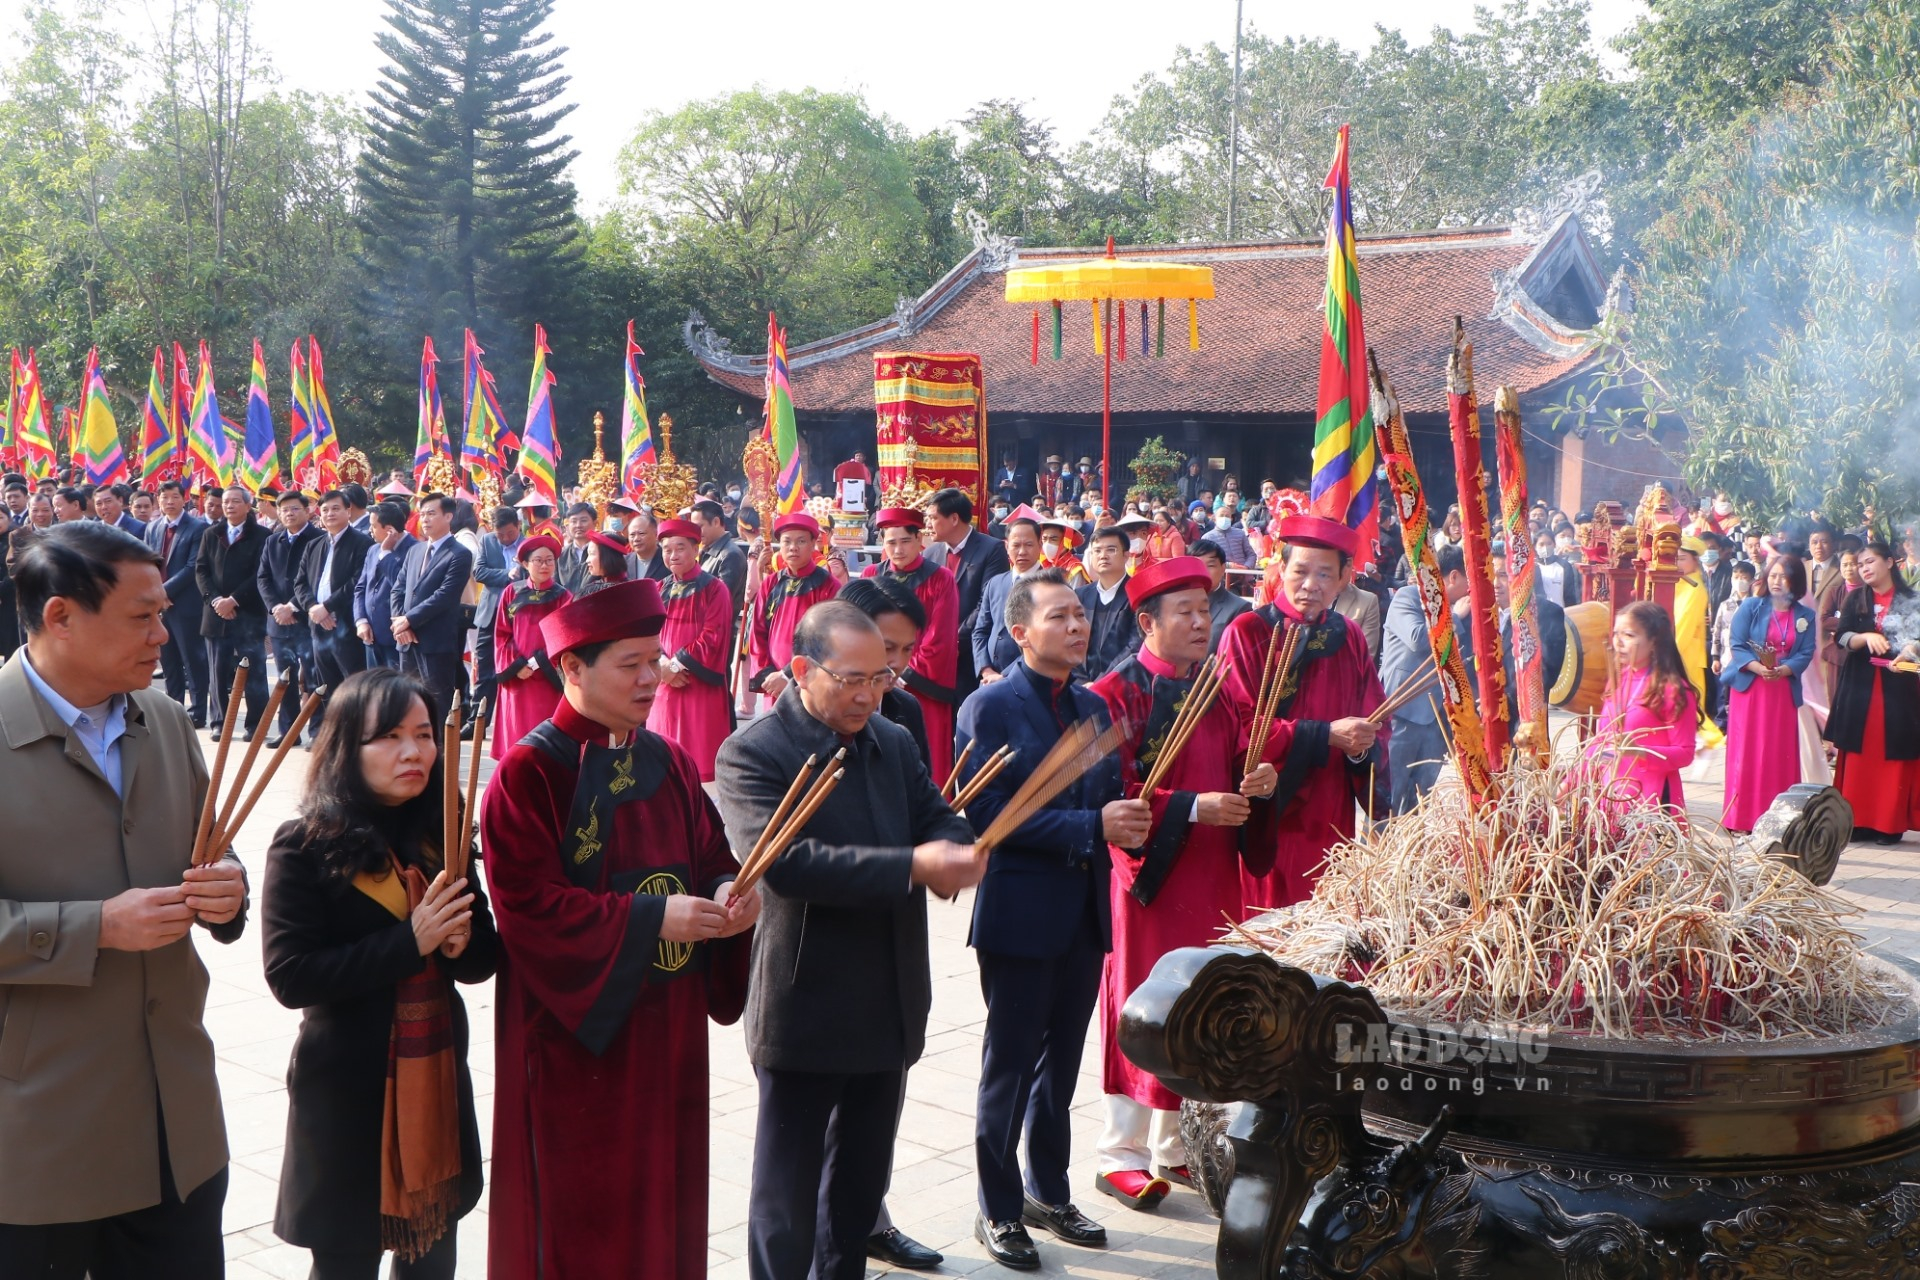 Lãnh đạo tỉnh Phú Thọ, huyện Hạ Hòa và các đại biểu dâng hương tại đền Mẫu Âu Cơ.